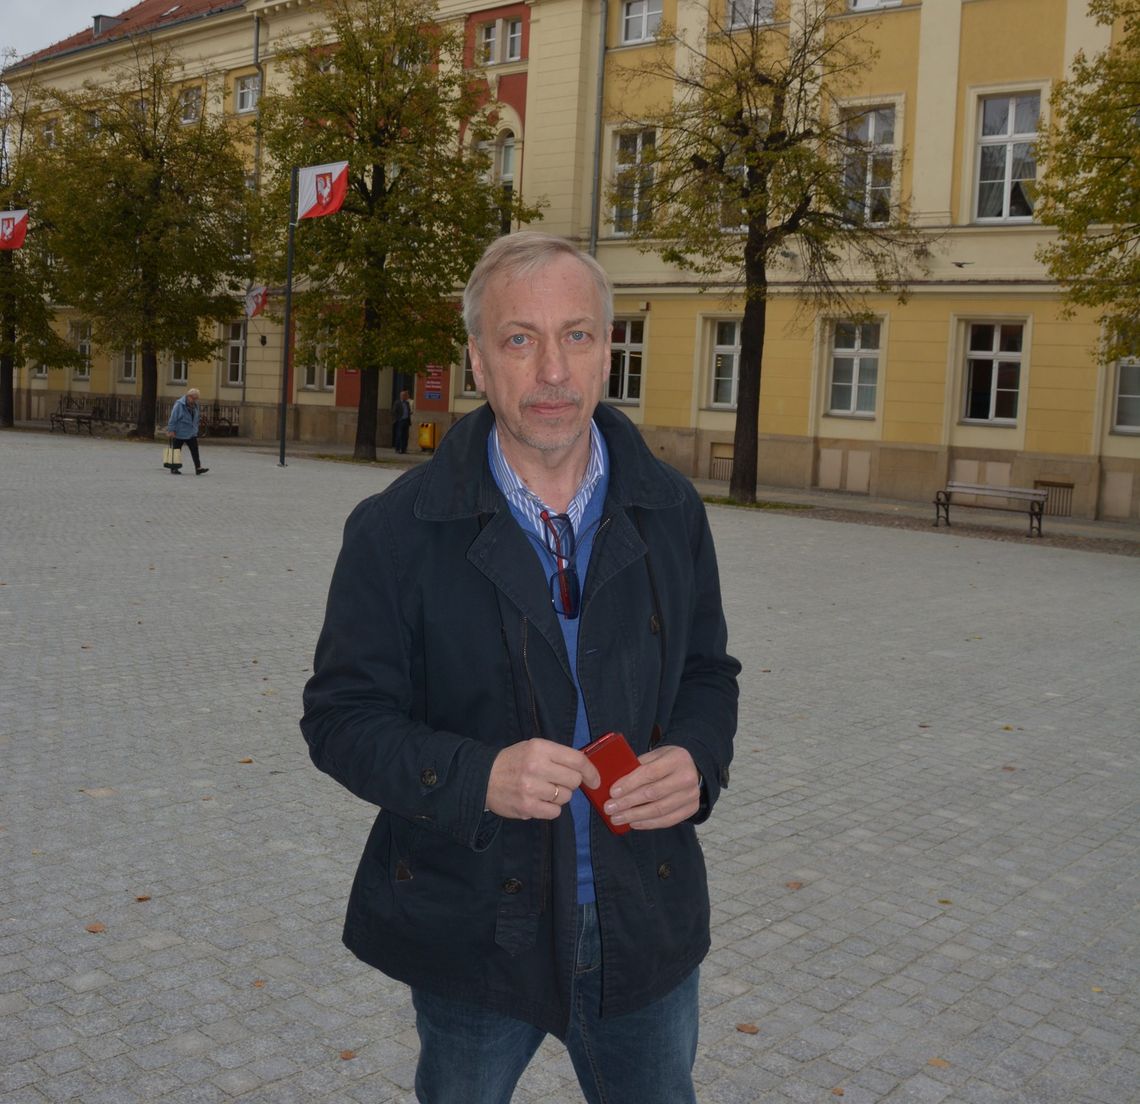 Finisz kampanii - Zdrojewski w Oławie